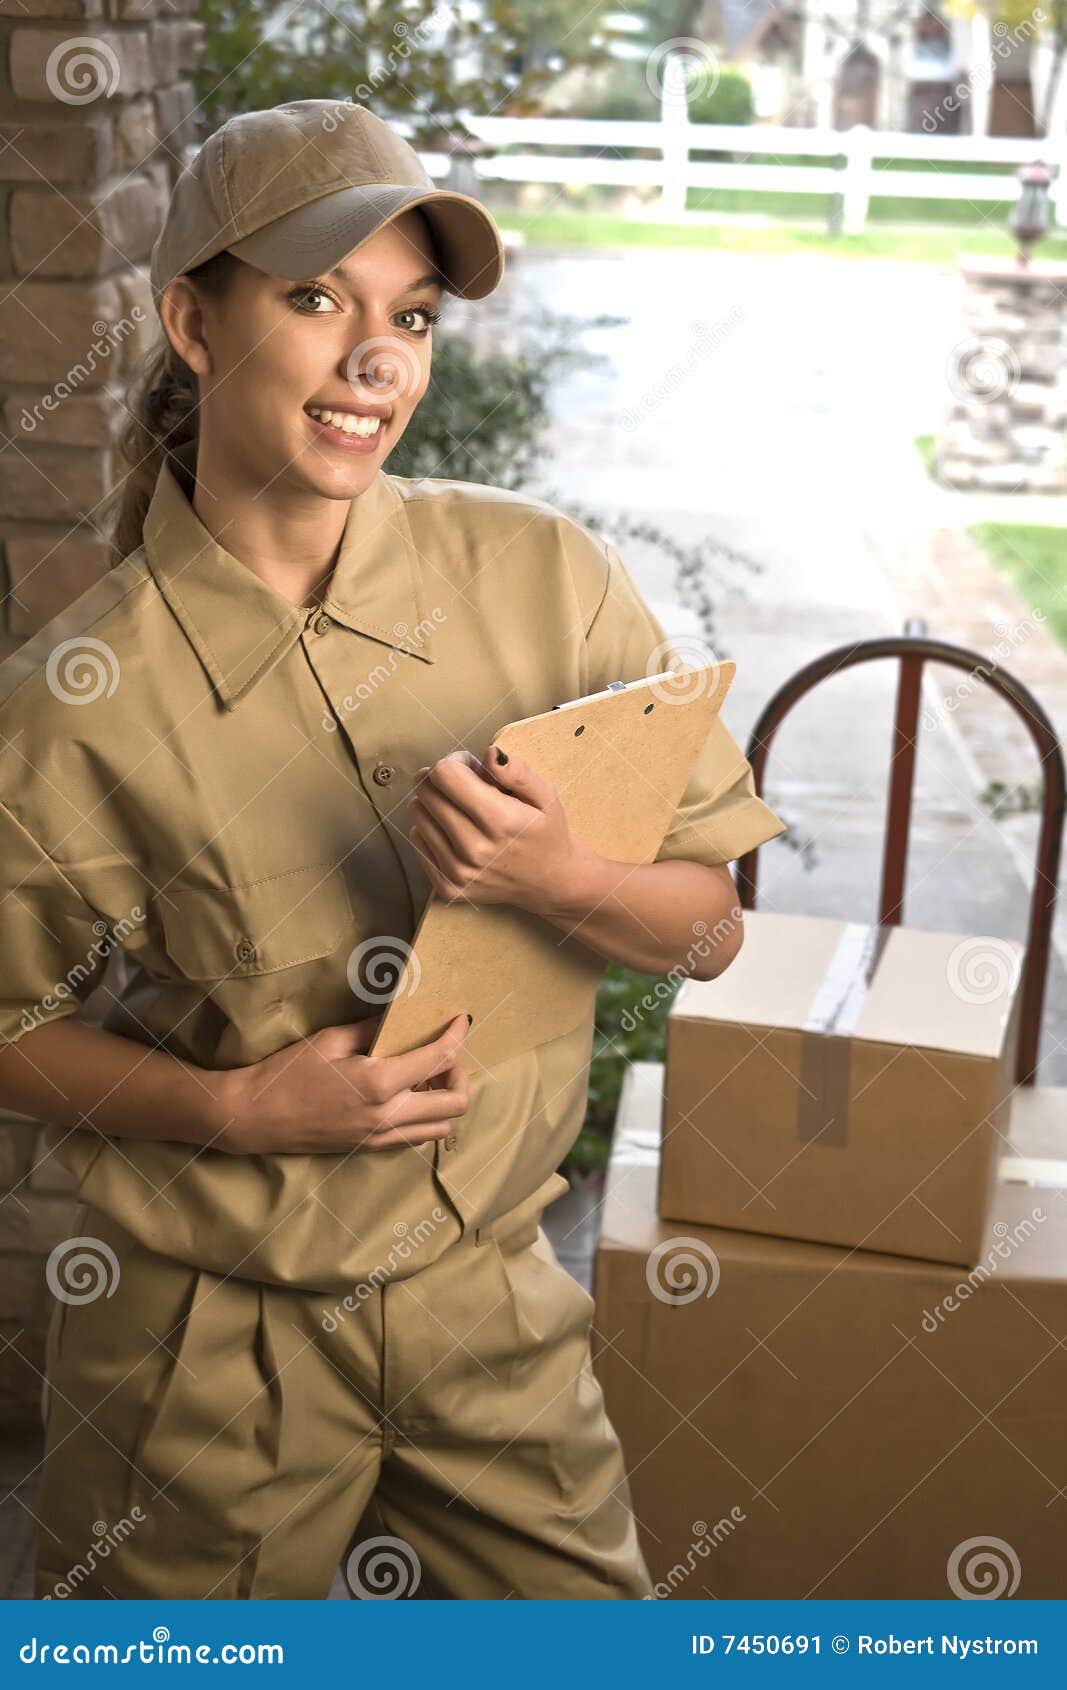 delivering package